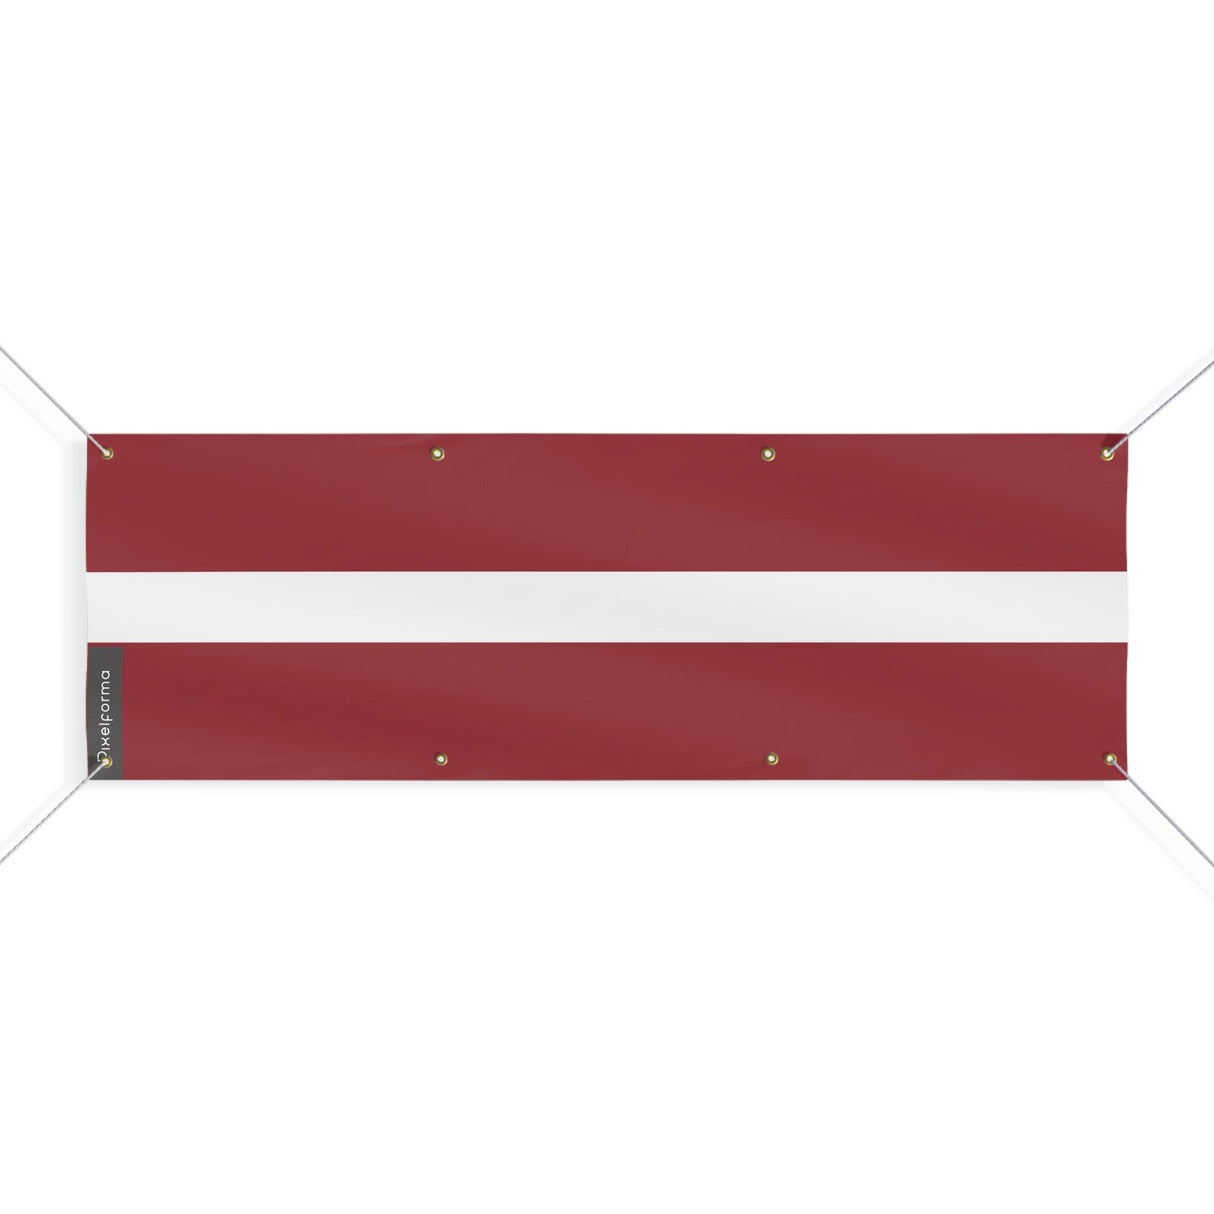 Drapeau de la Lettonie 8 Oeillets en plusieurs tailles - Pixelforma 